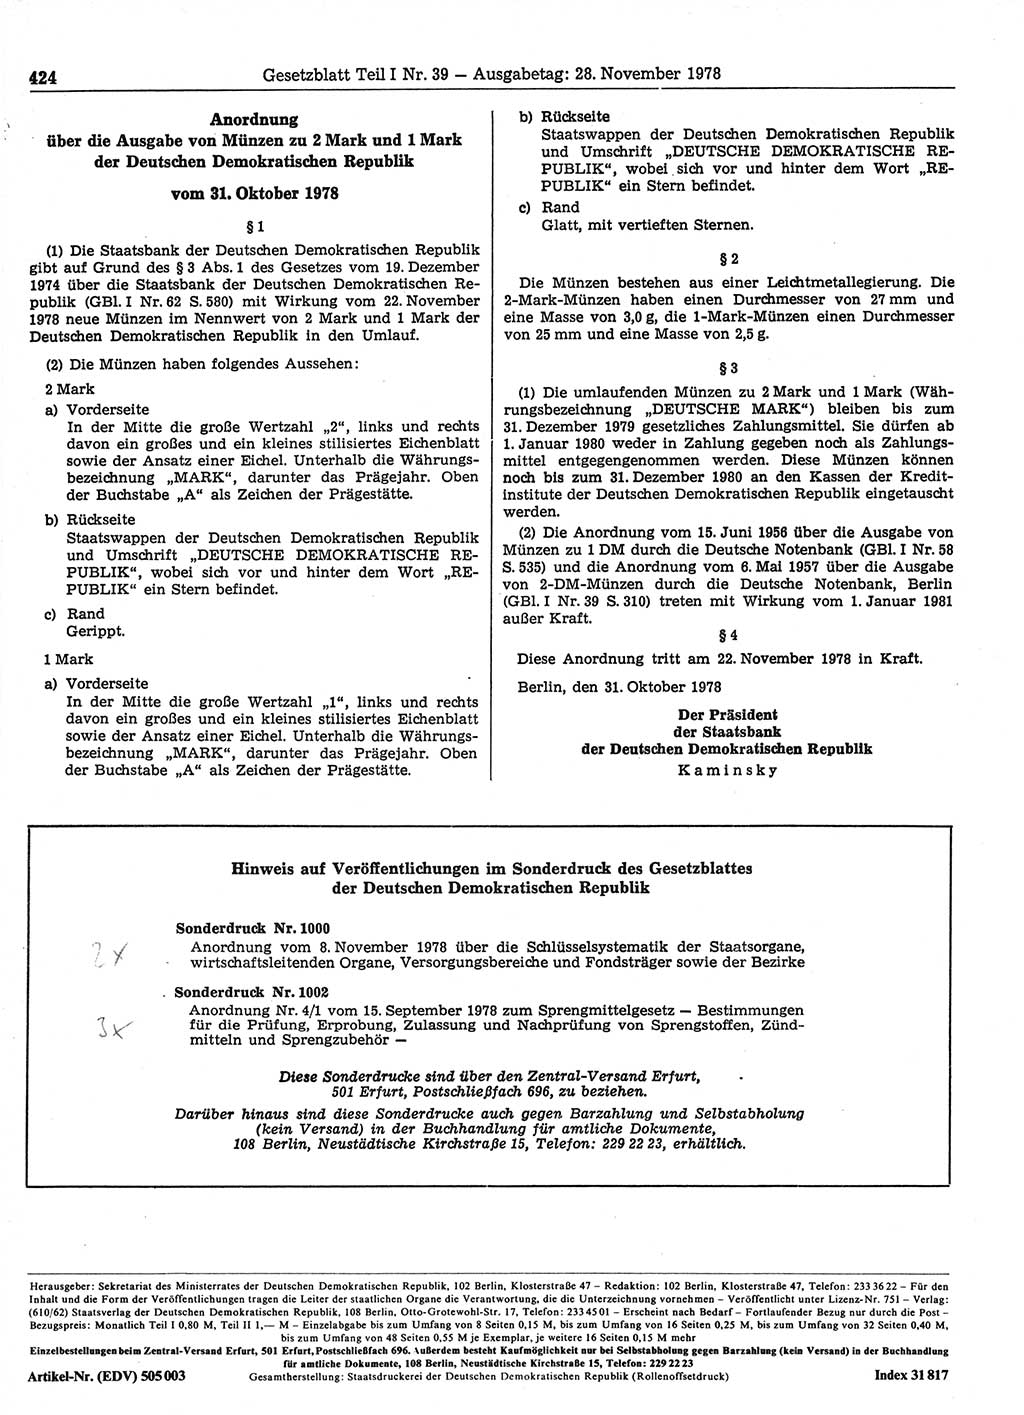 Gesetzblatt (GBl.) der Deutschen Demokratischen Republik (DDR) Teil Ⅰ 1978, Seite 424 (GBl. DDR Ⅰ 1978, S. 424)